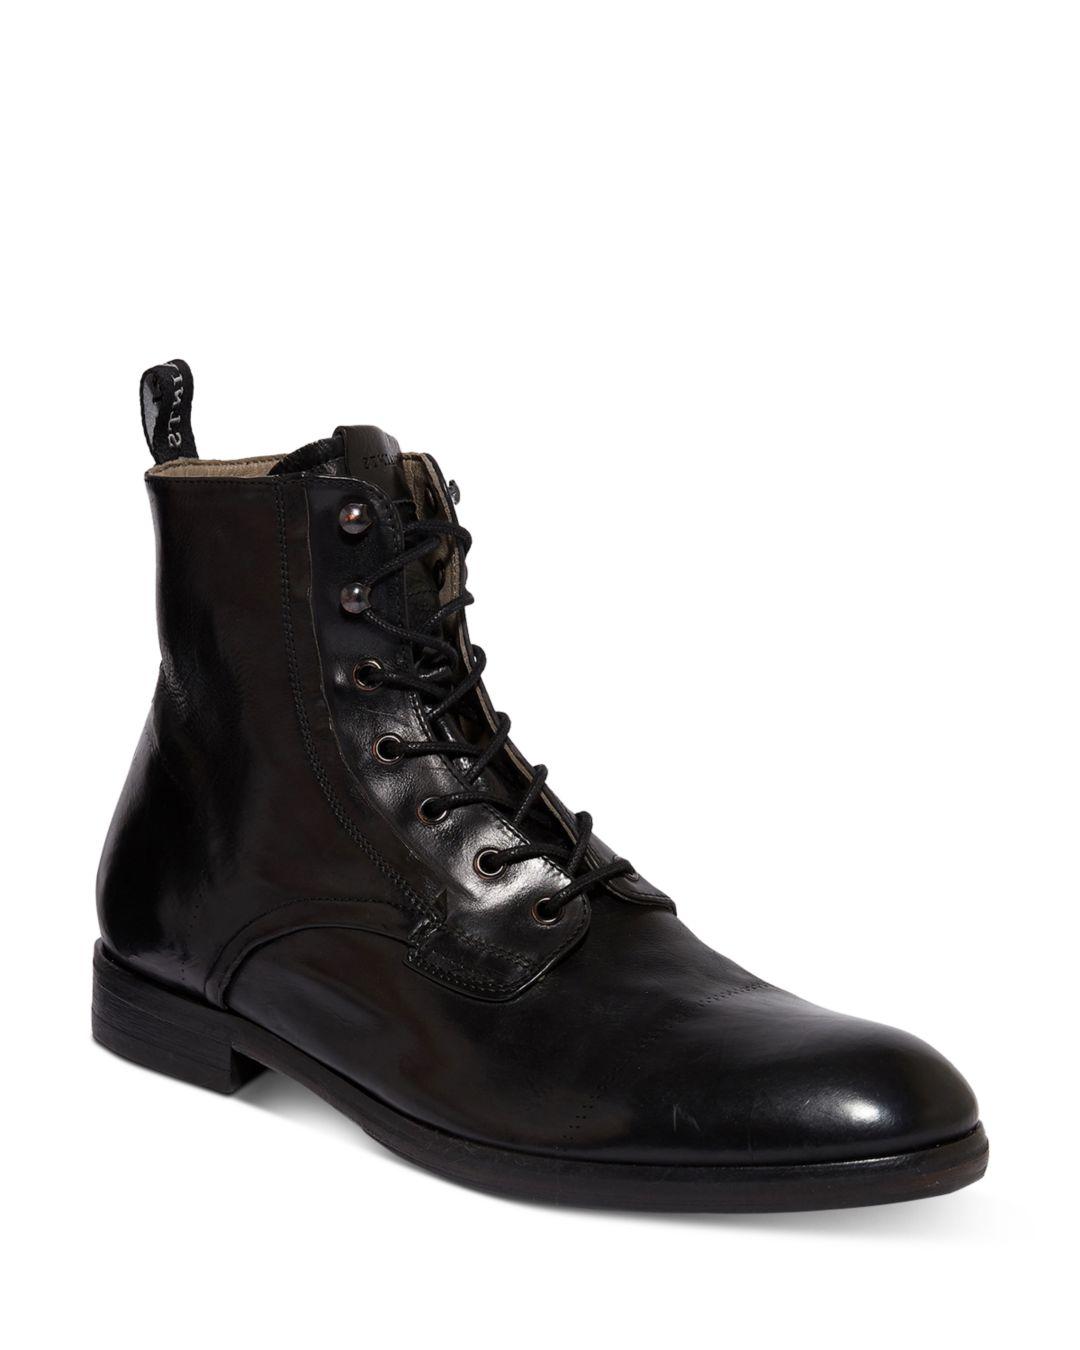 AllSaints Mikkel Leather Boots in Black for Men - Lyst